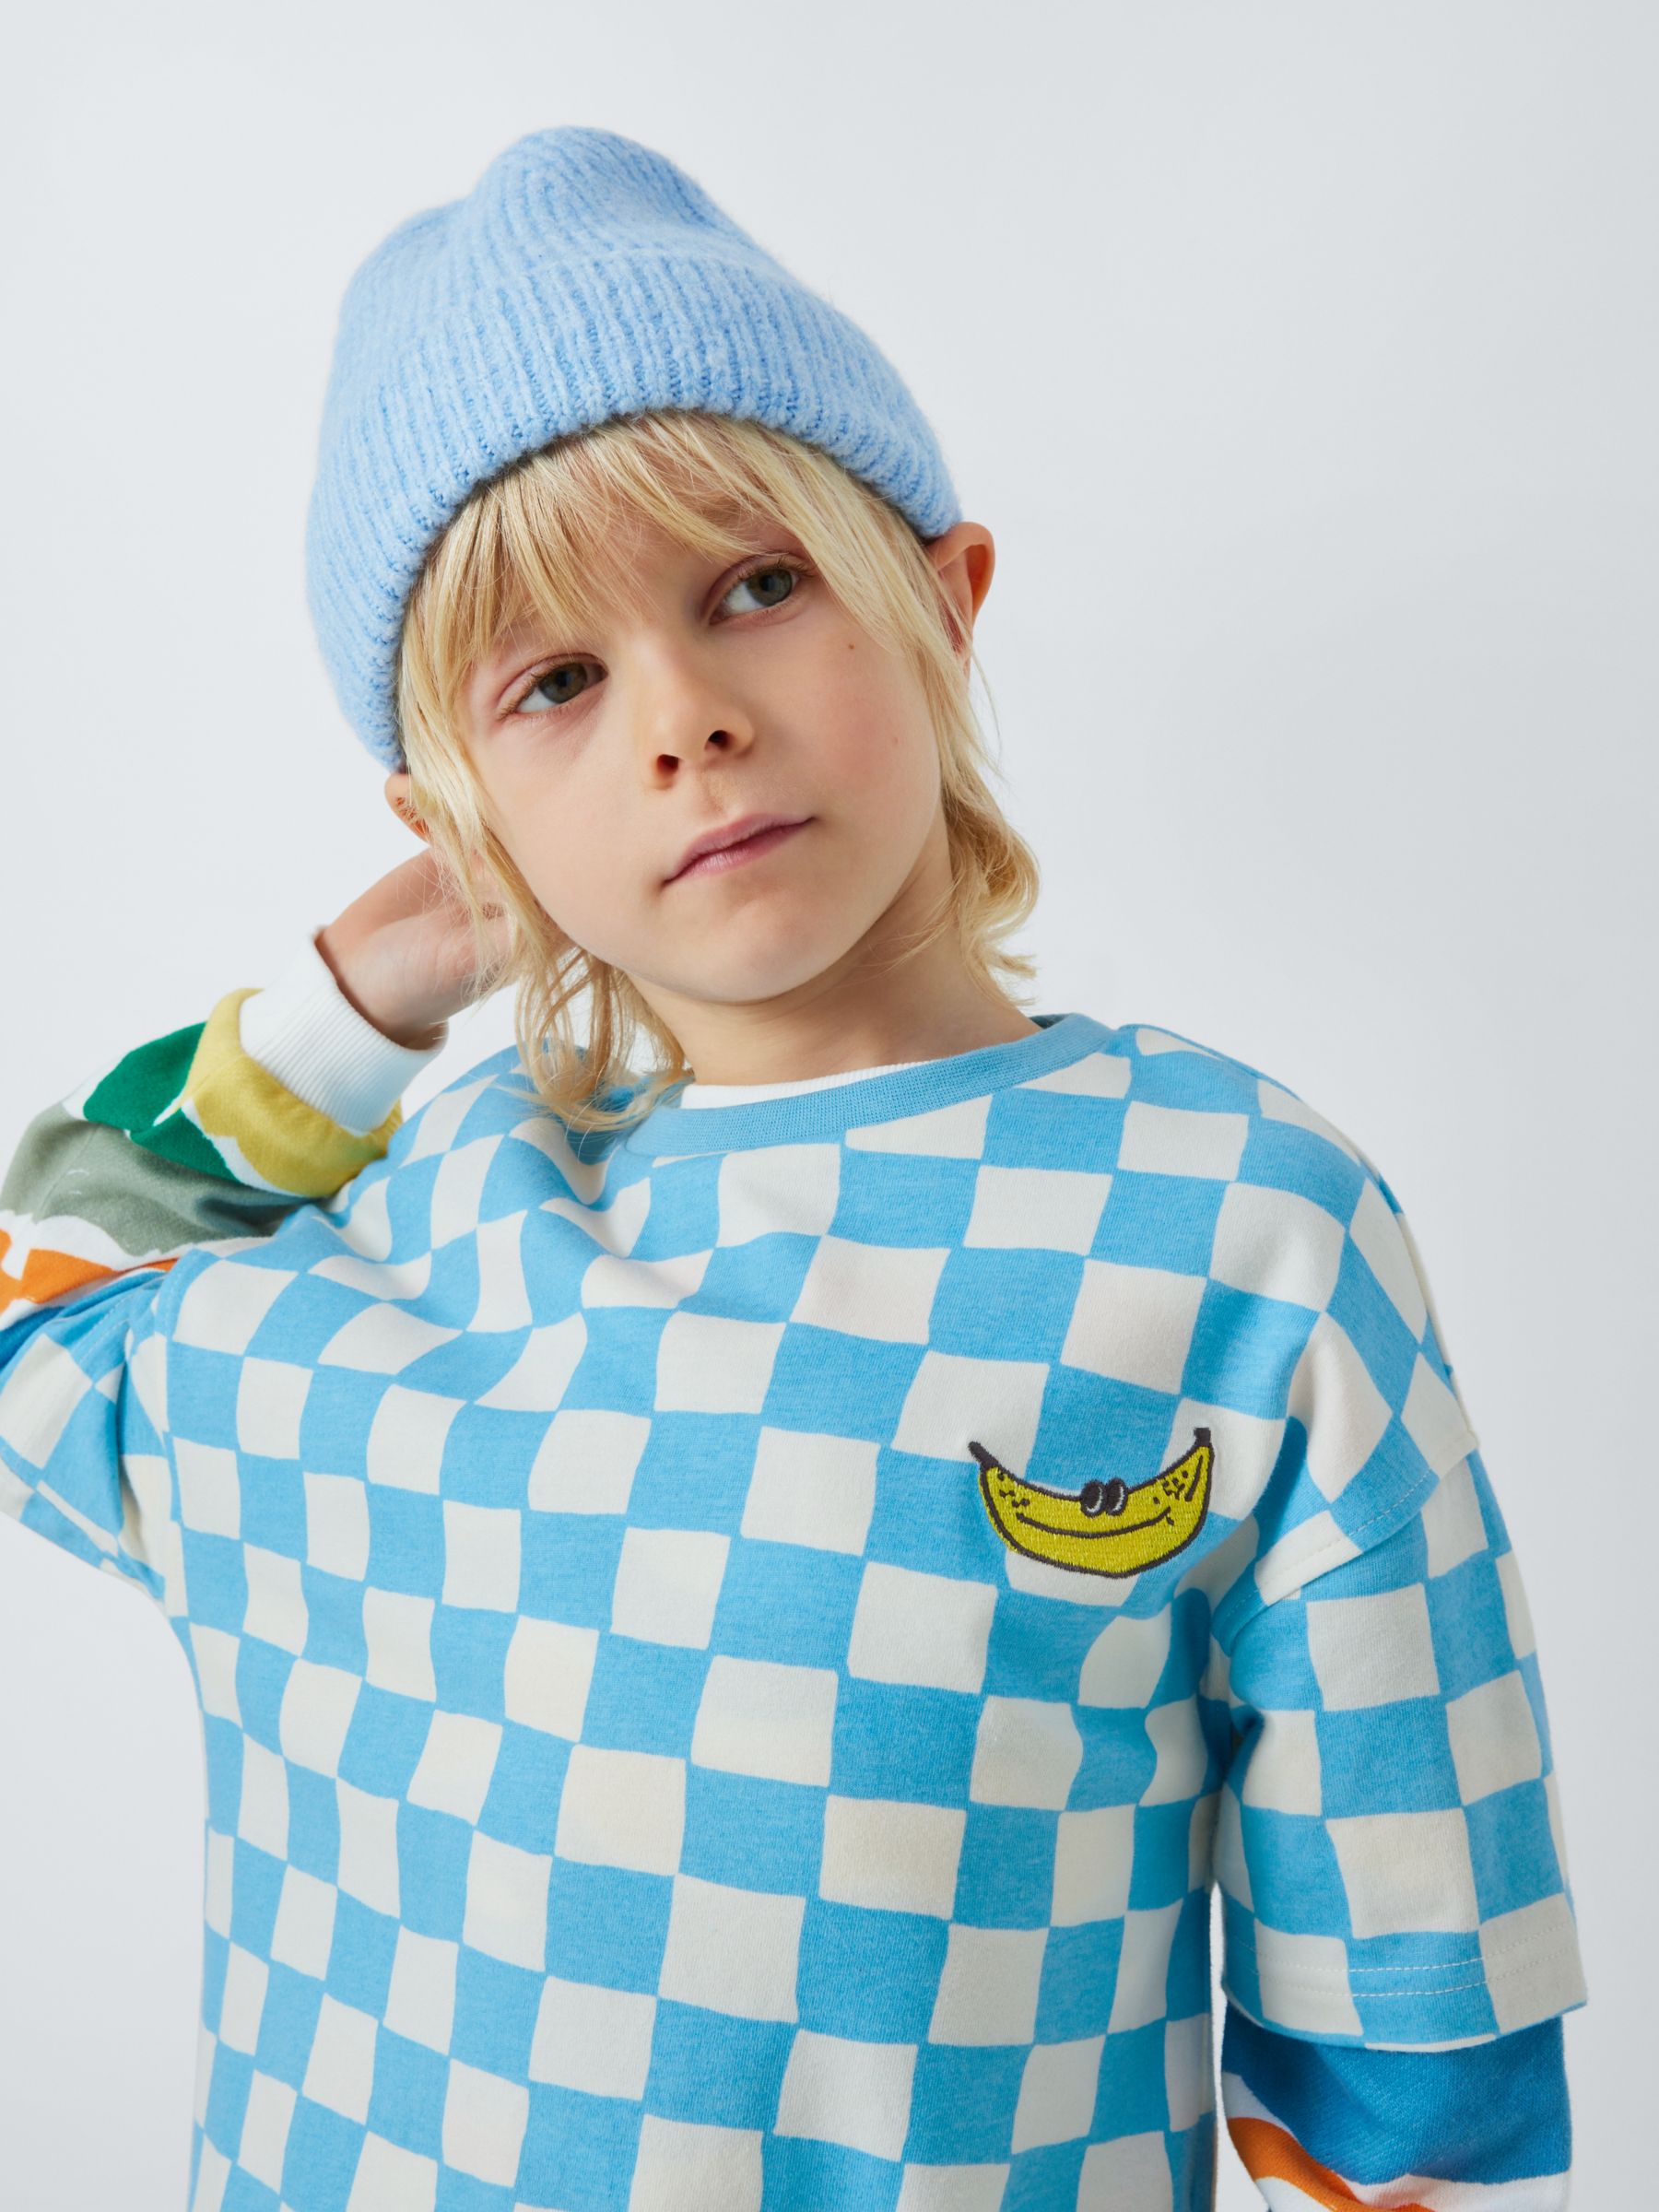 John Lewis ANYDAY Kids' Checker T-Shirt, Air Blue/Gardenia, 9 years